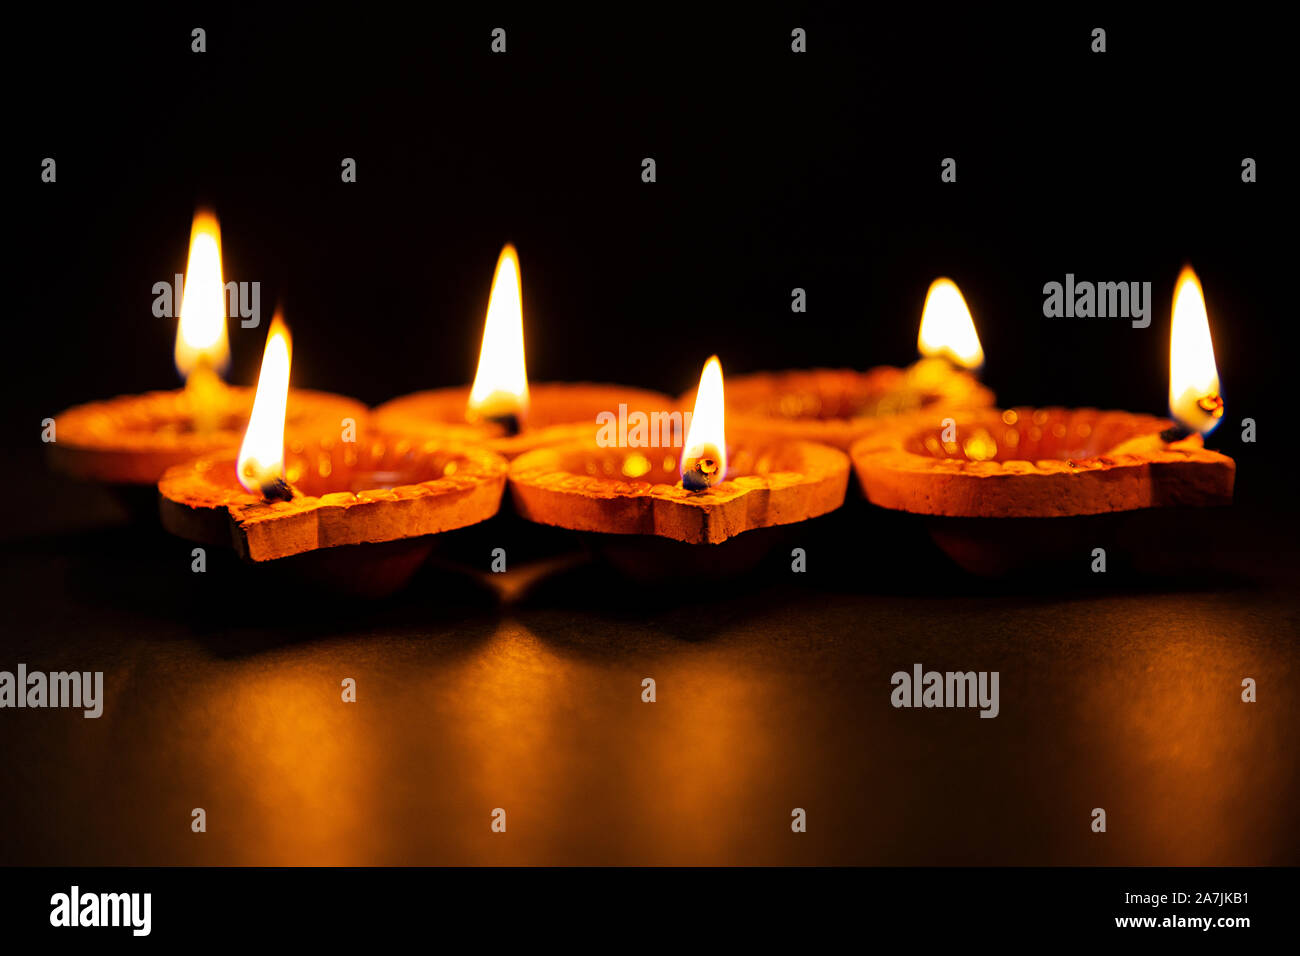 Tradicional hindú Diwali Diya lámparas de aceite iluminación la ocasión de Diwali Festival Foto de stock